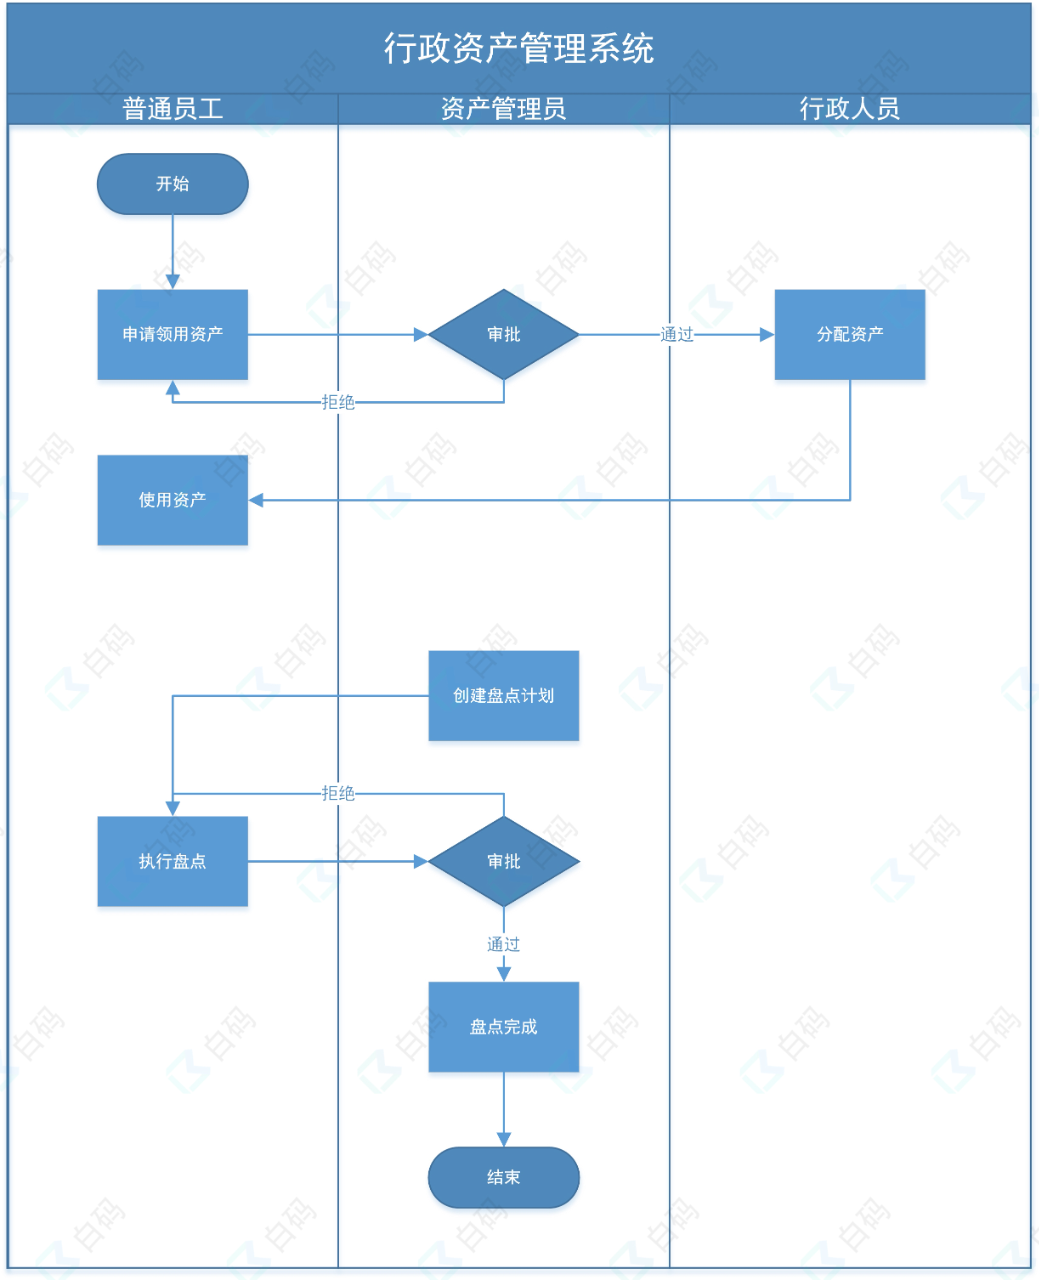 白码行政资产管理系统功能流程图